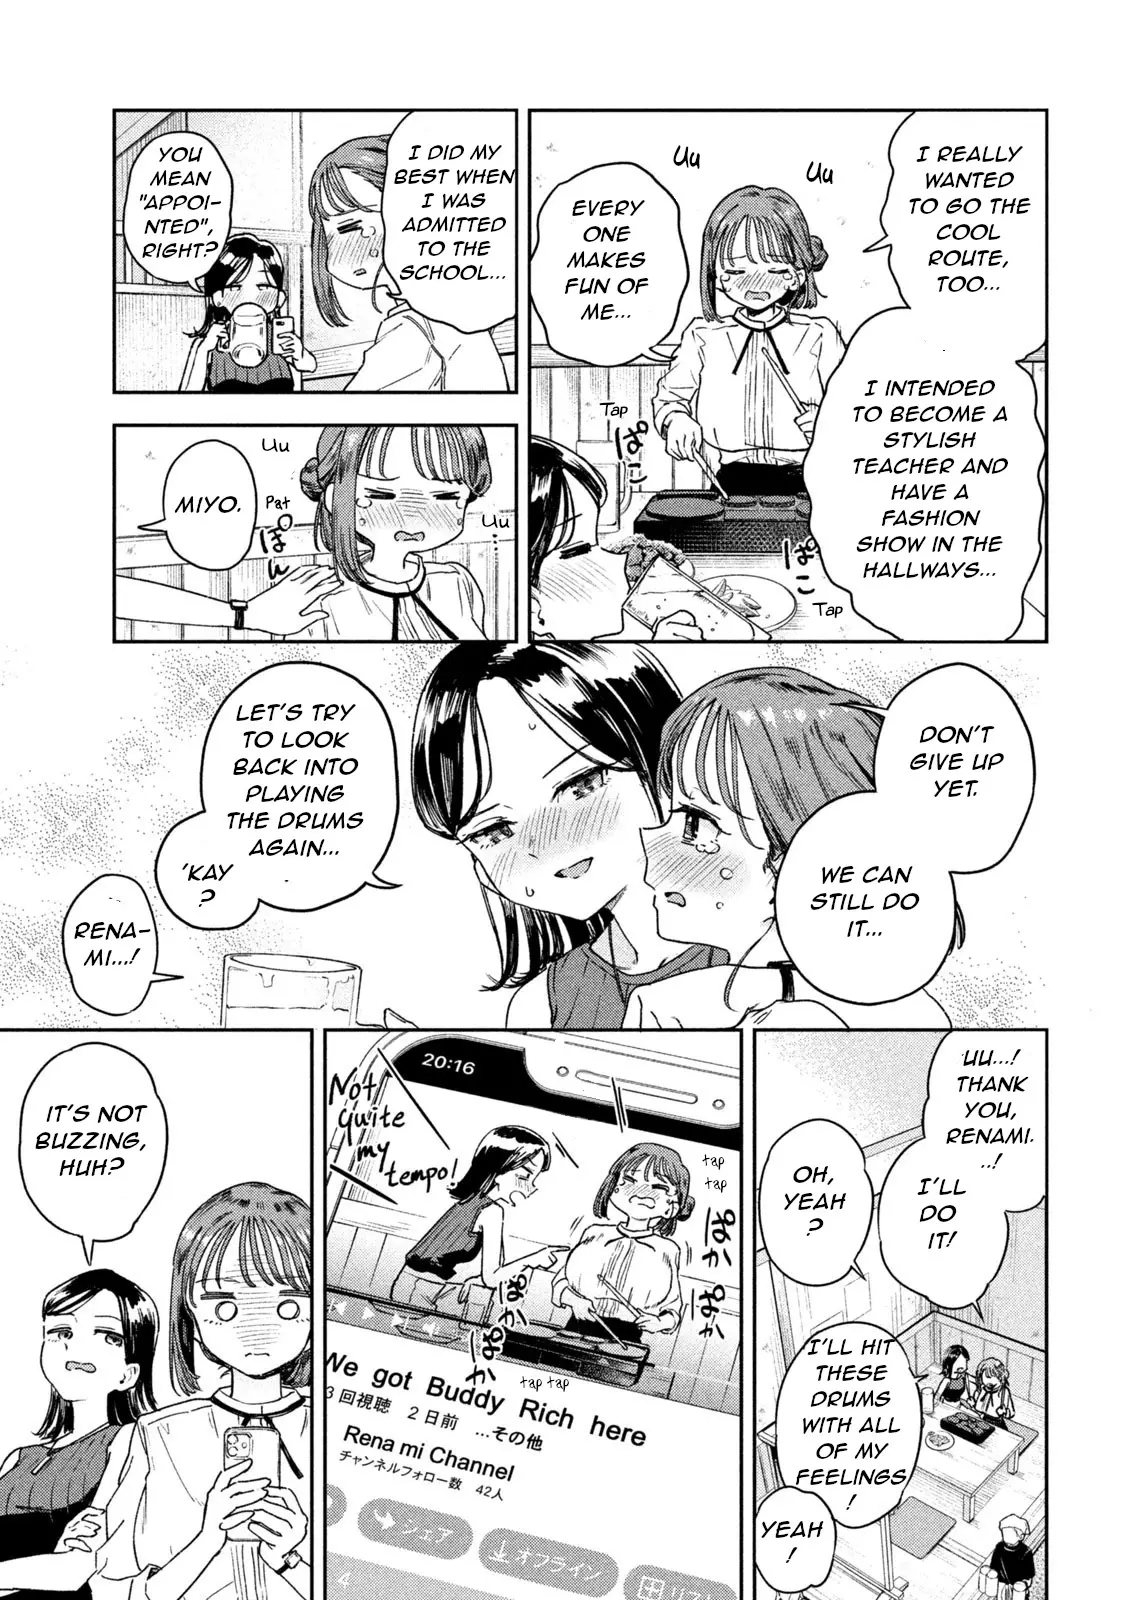 Miyo-Chan Sensei Said So - 4 page 9-ef63b97e